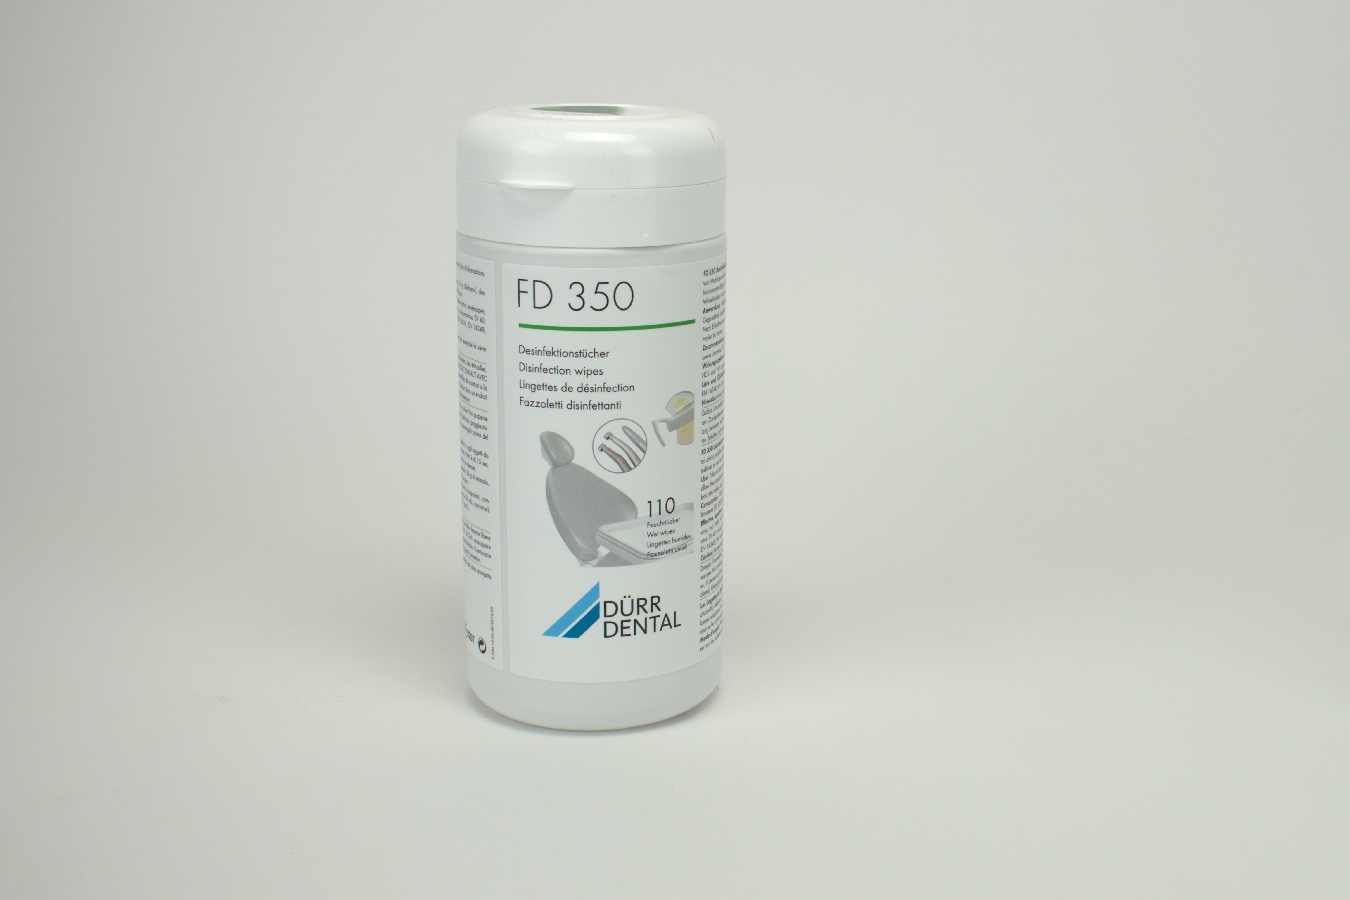 FD 350 Desinfektionstücher 110 Stück Dose